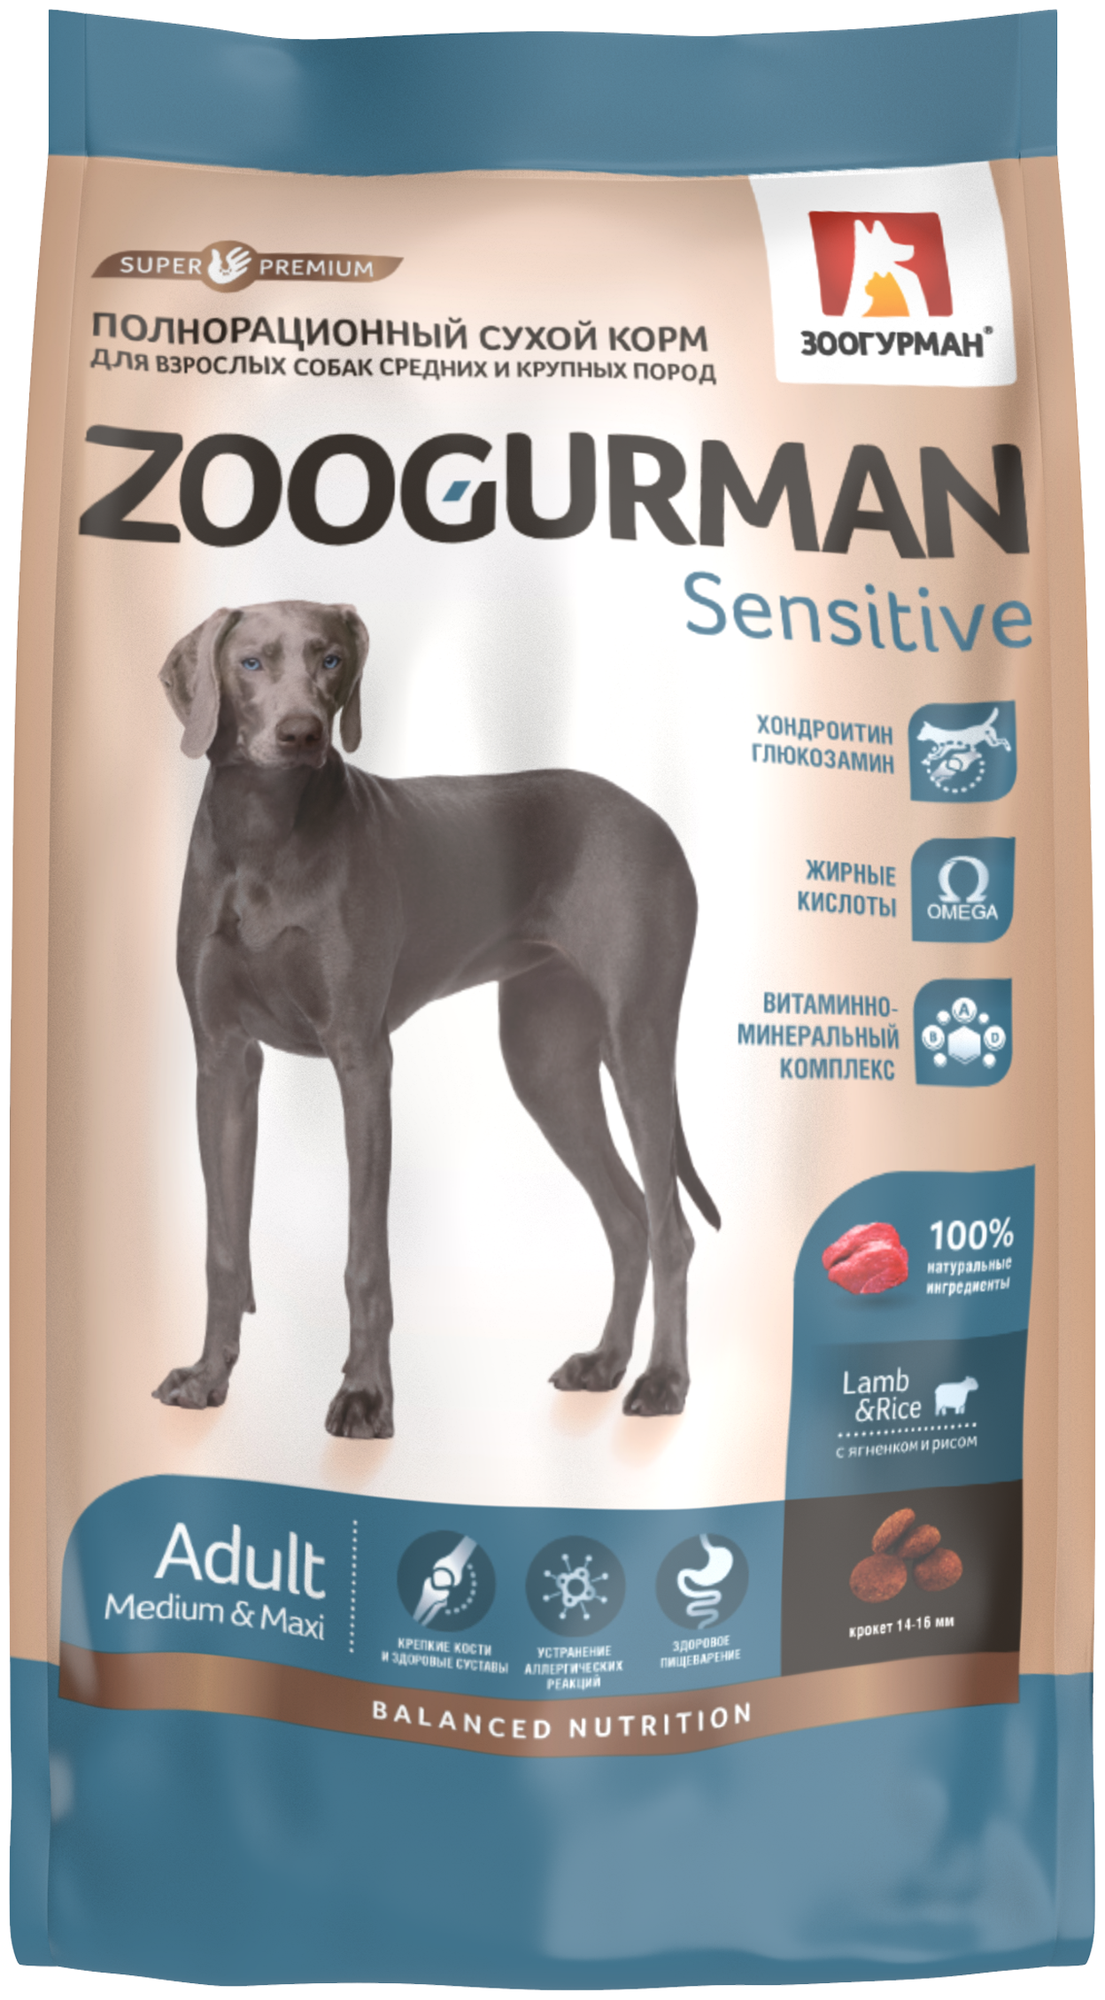 Полнорационный сухой корм для взрослых собак средних и крупных пород Zoogurman Sensitive Ягненок с рисом/ Lamb & Rice 22кг